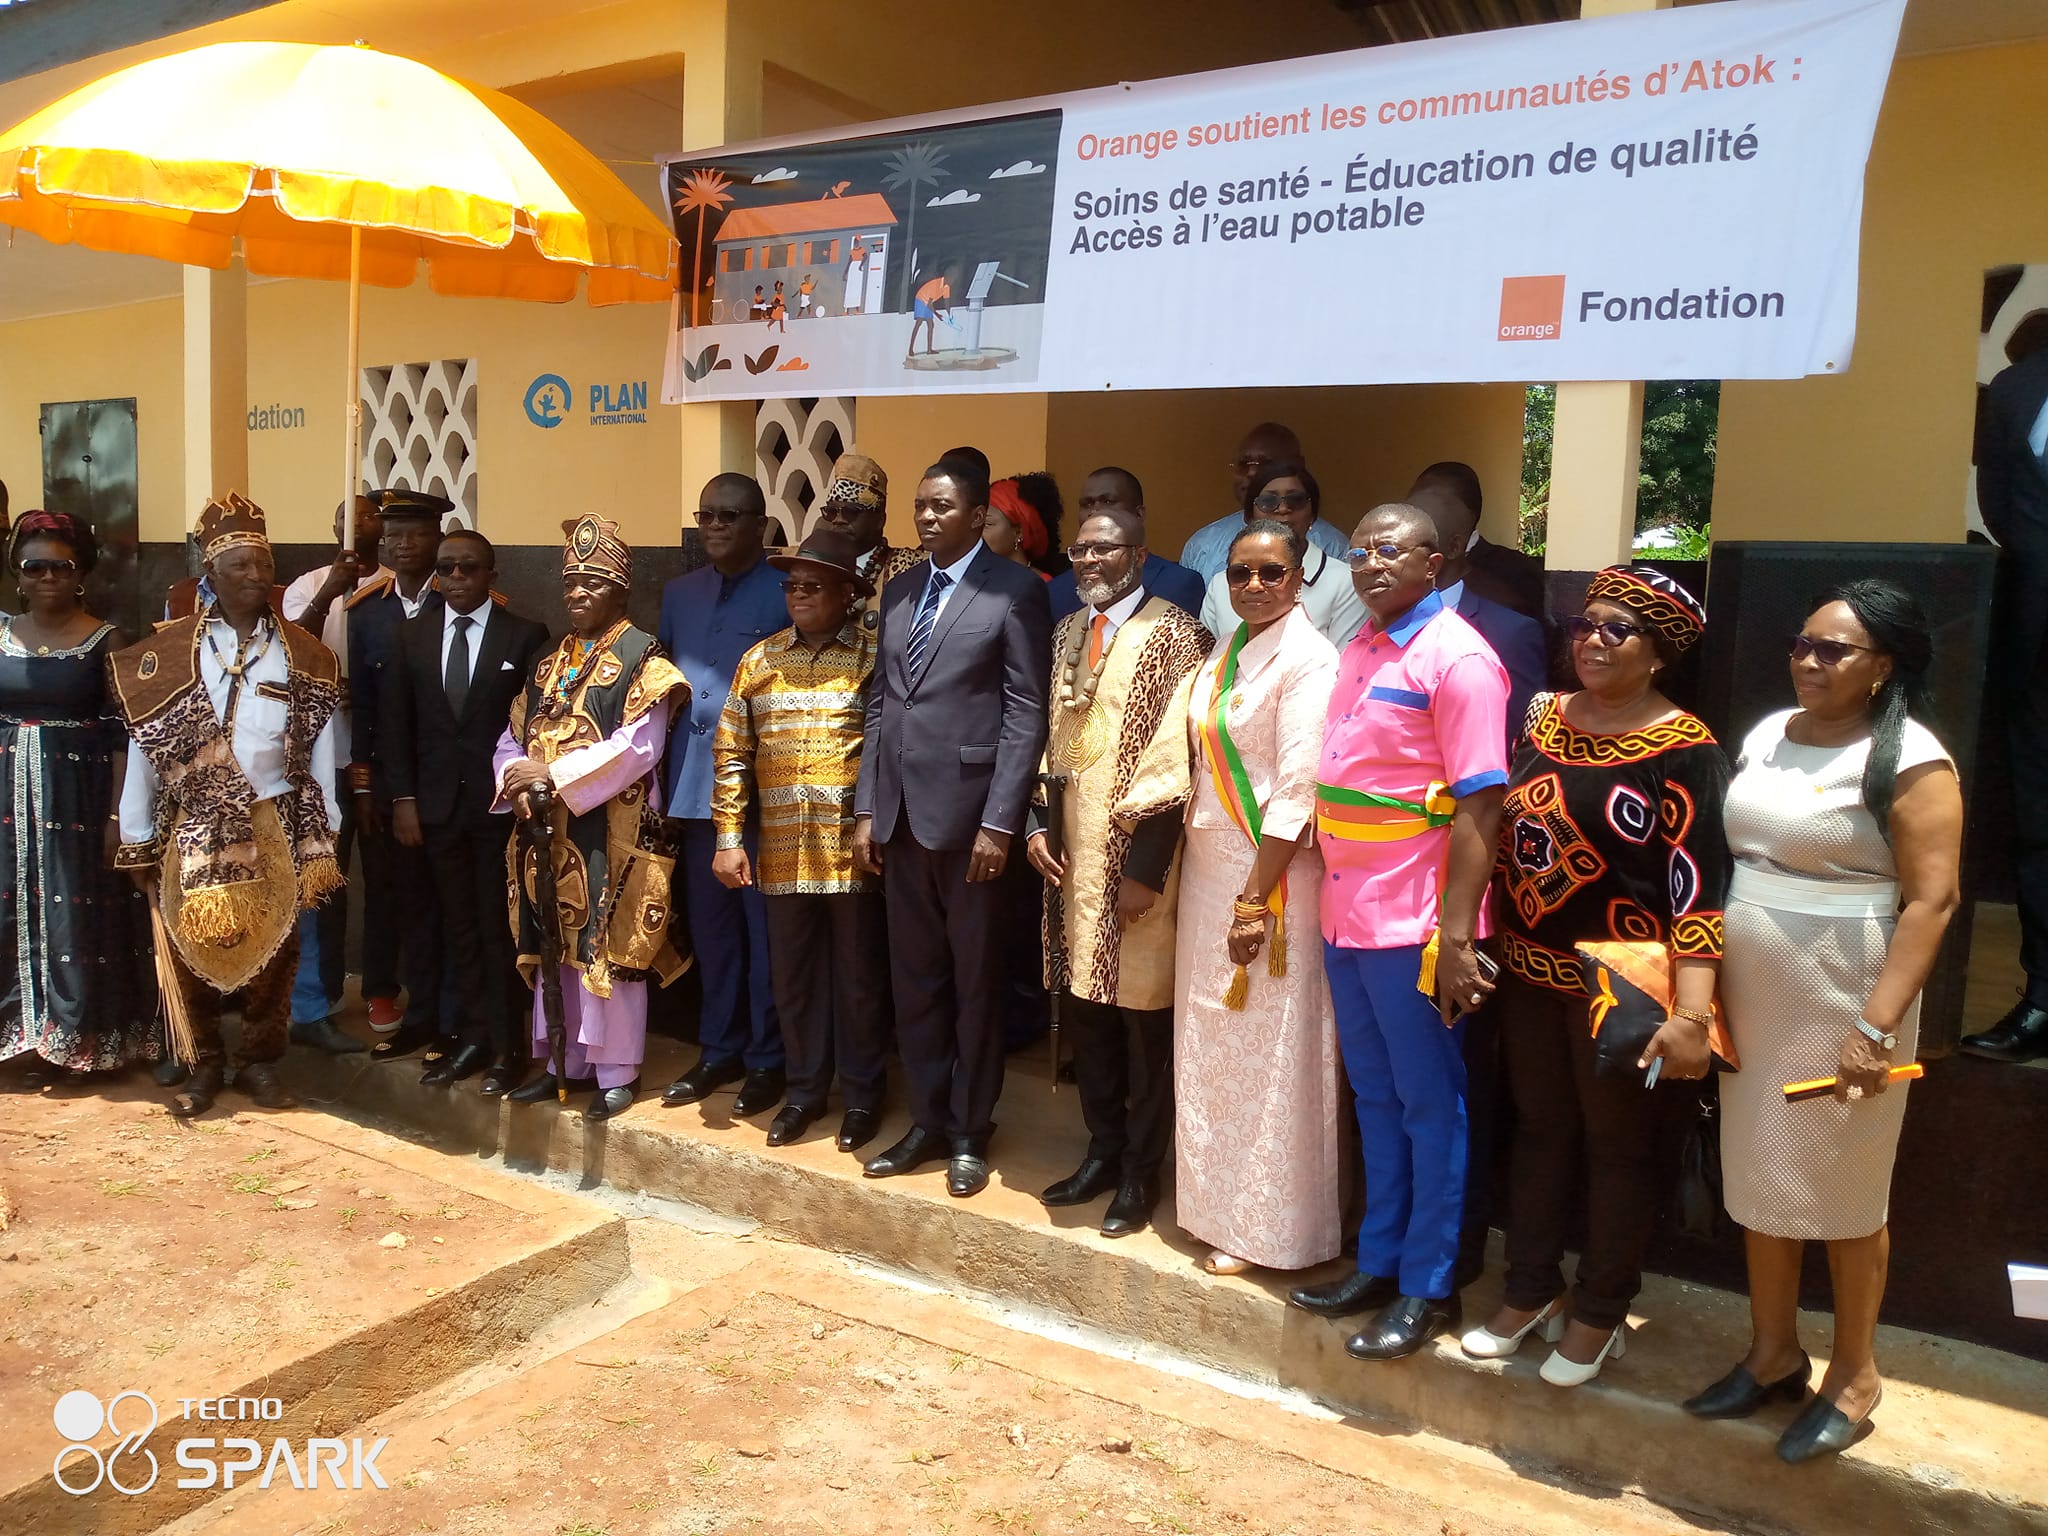 Atok dans le réseau « Village Orange »: "Des bâtiments affichent fière allure, preuve que la Fondation Orange est passée par là" [Patrick BENON]